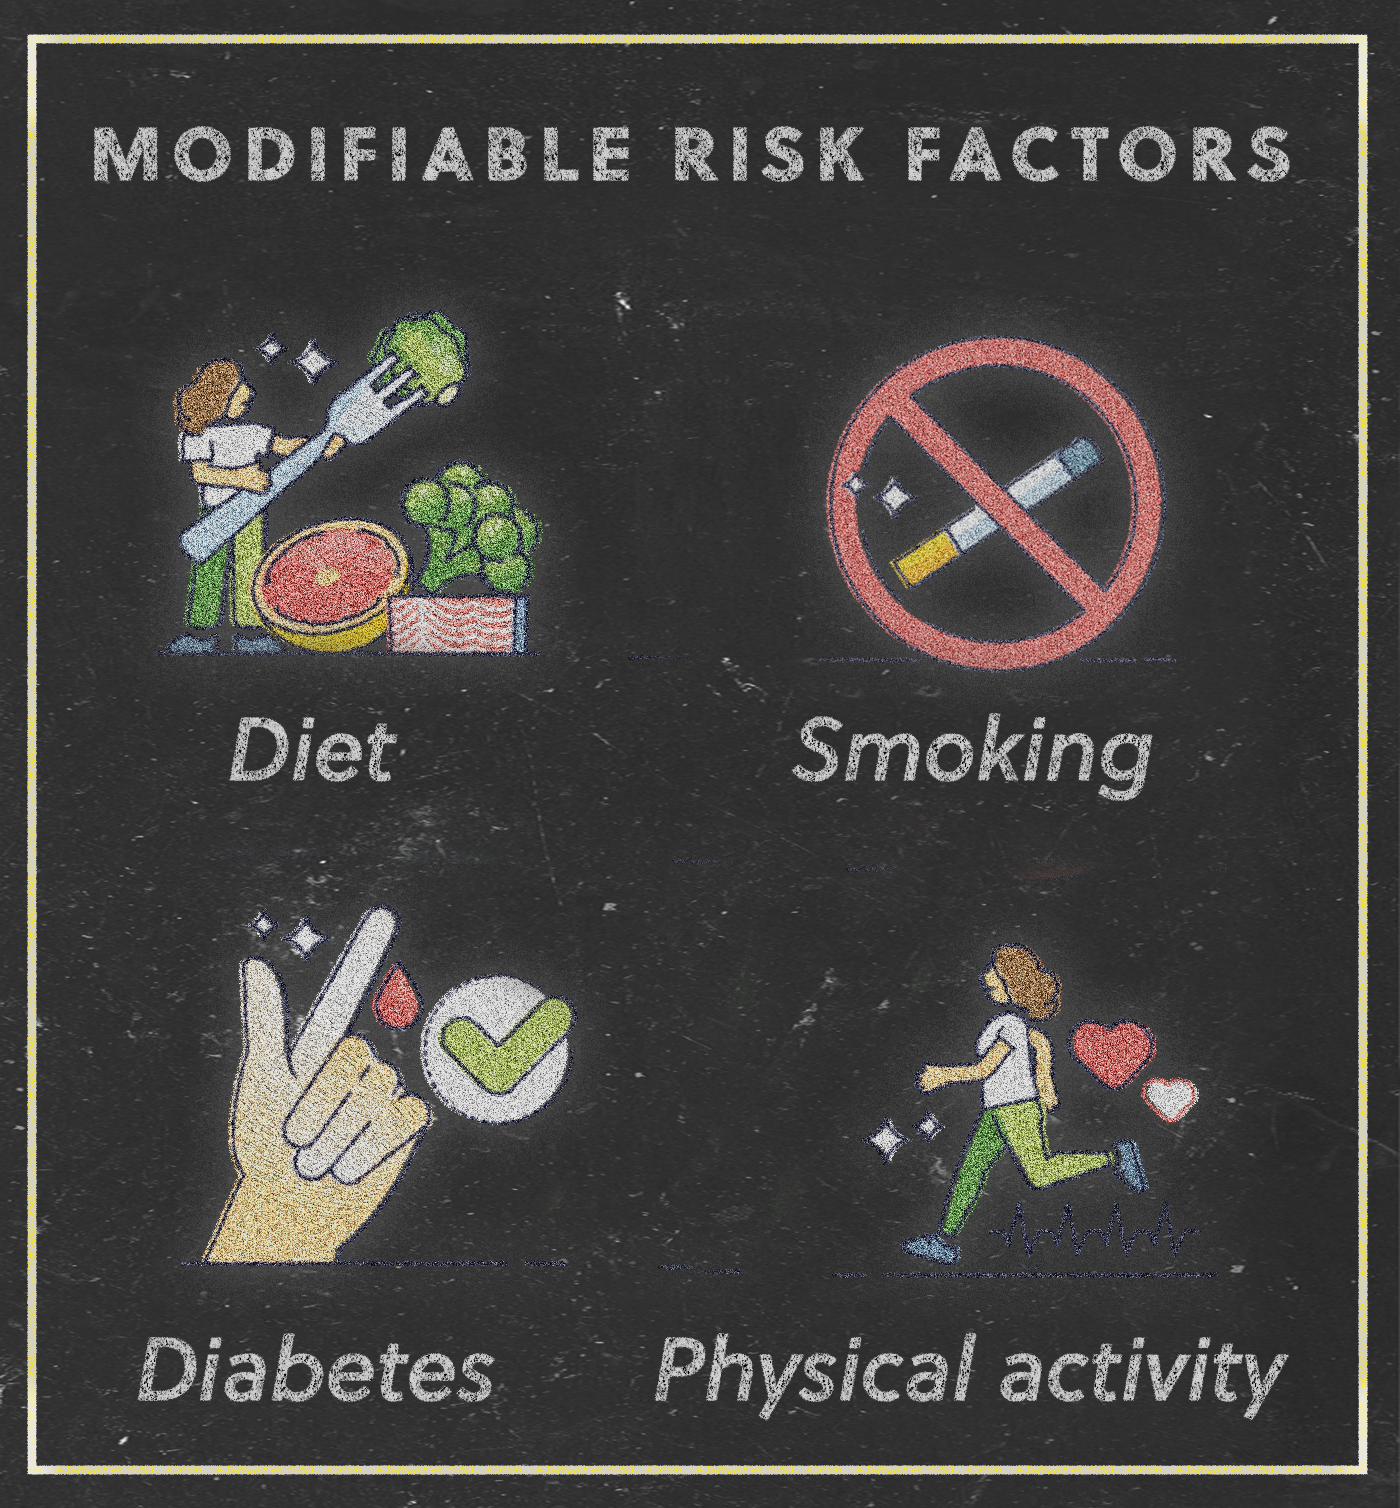 Modifiable risk factors for stroke